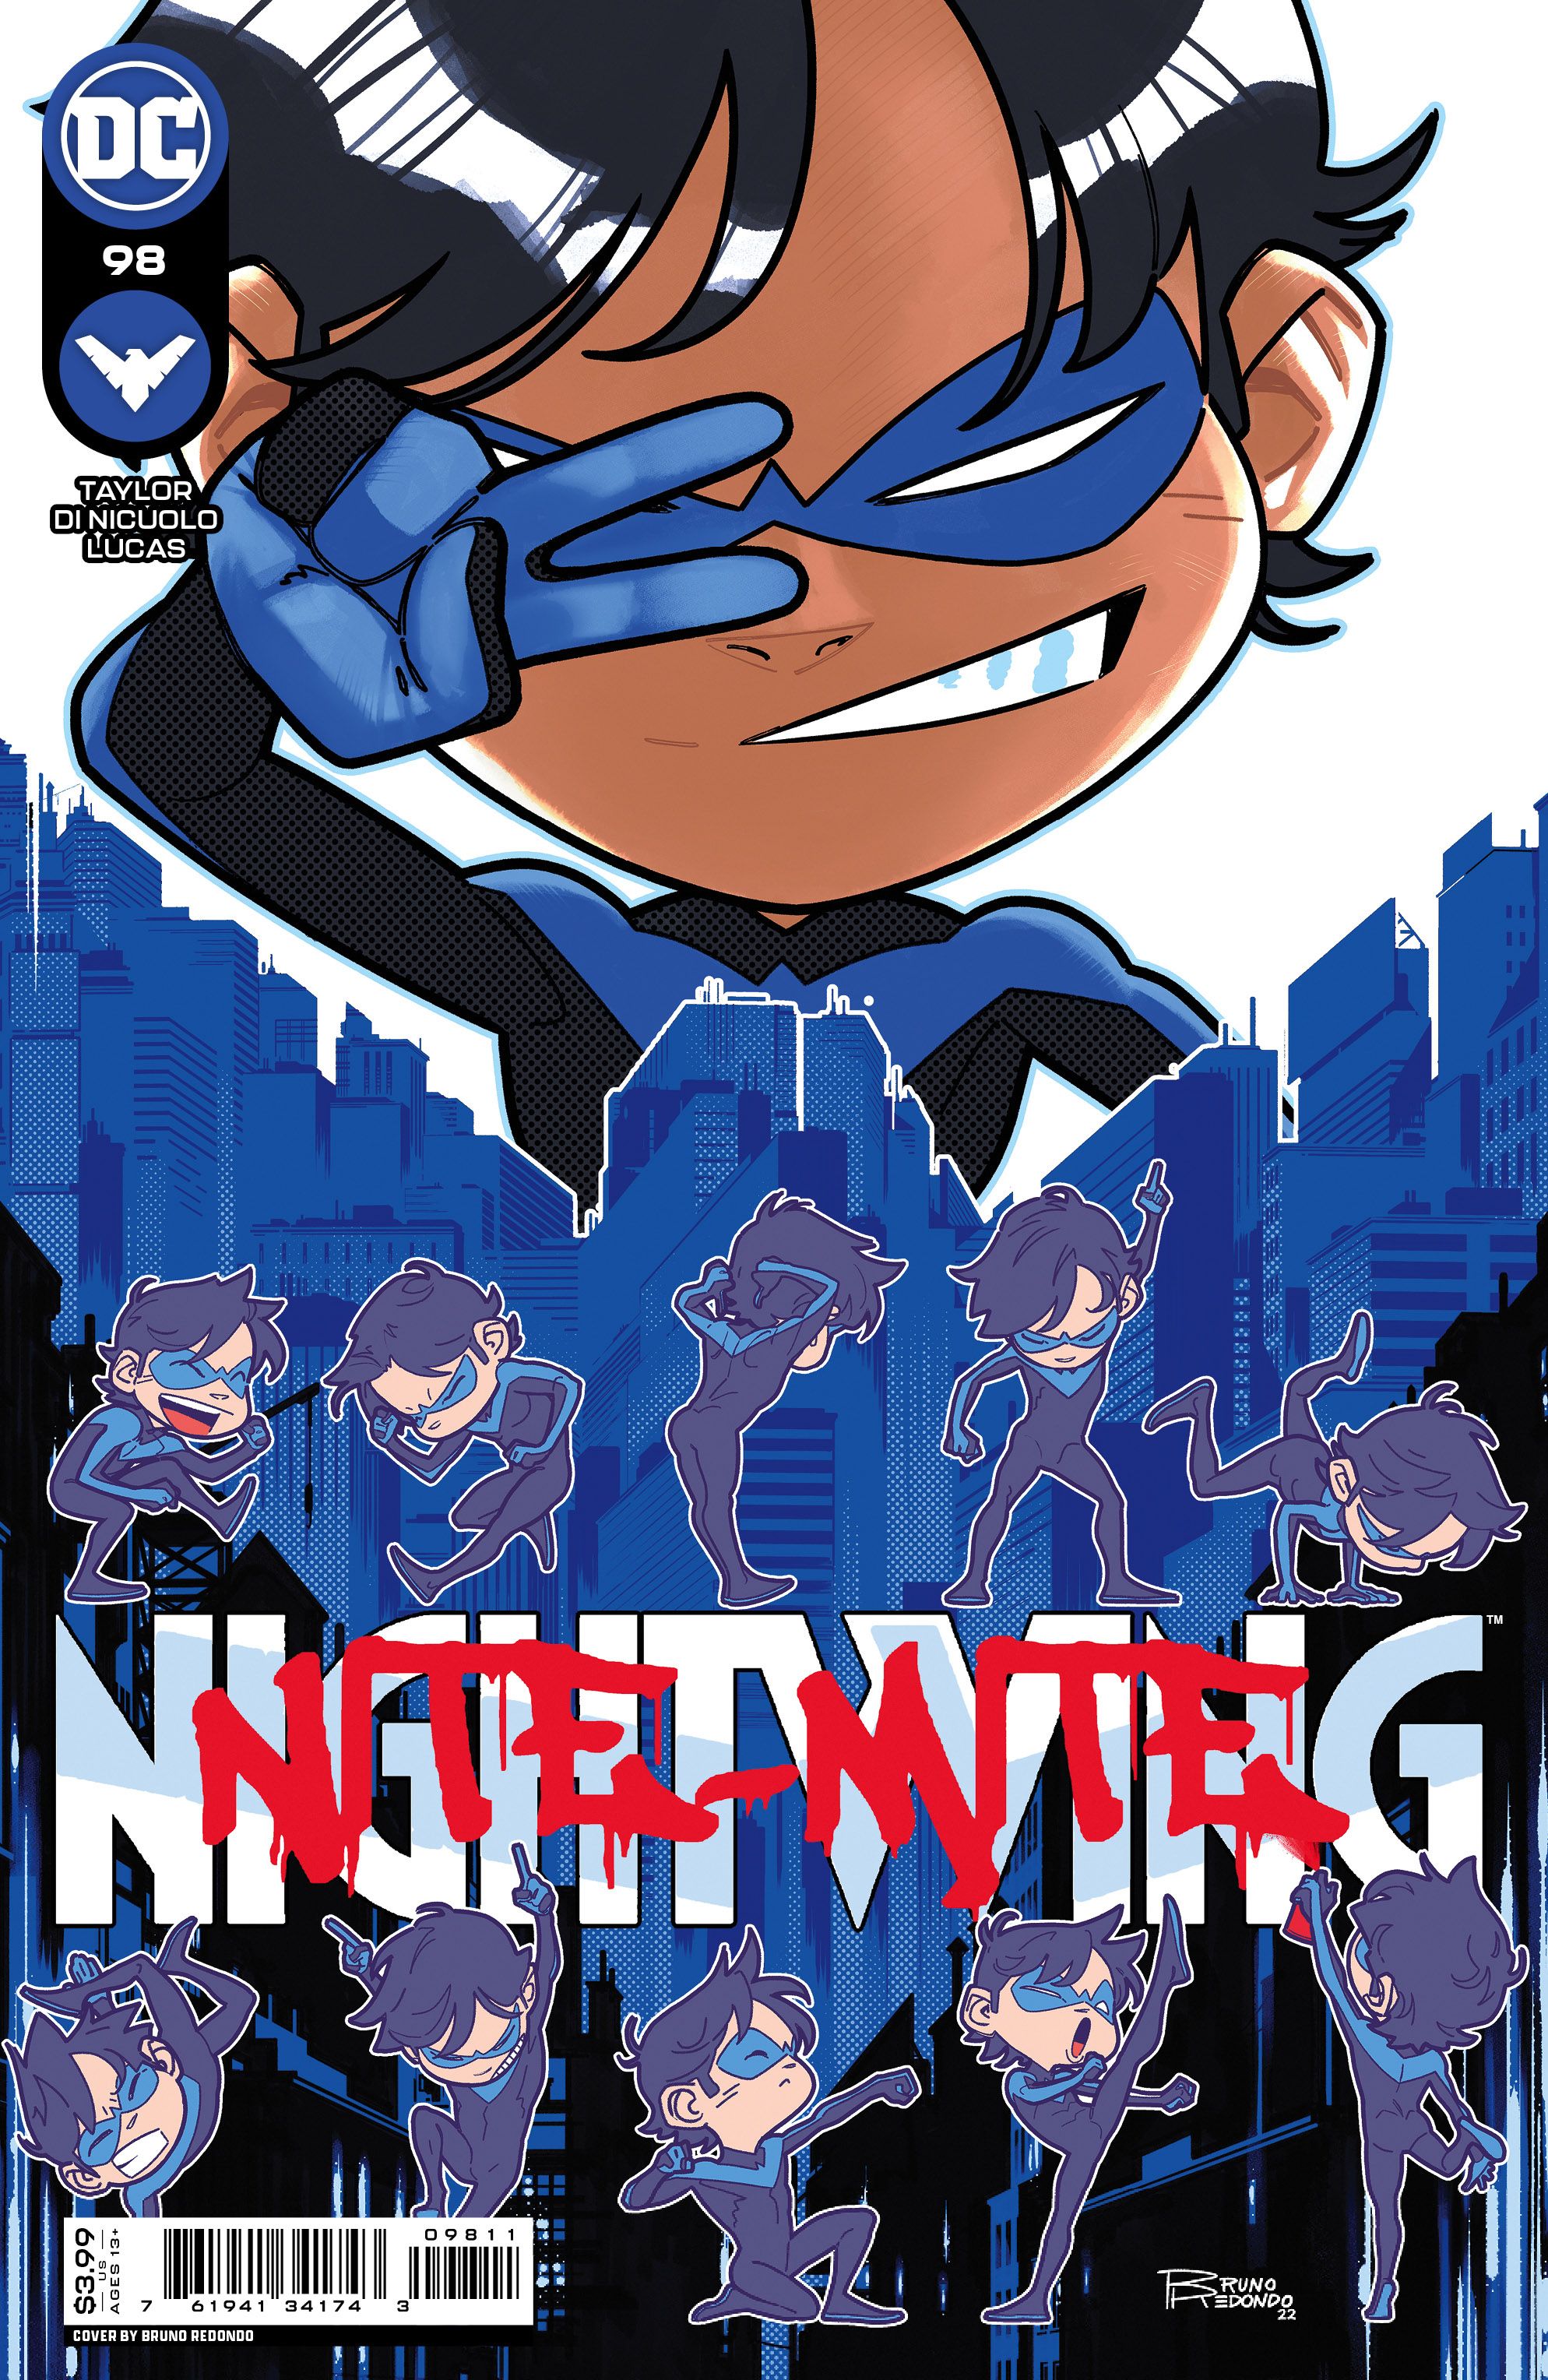 Nightwing #98 Comic